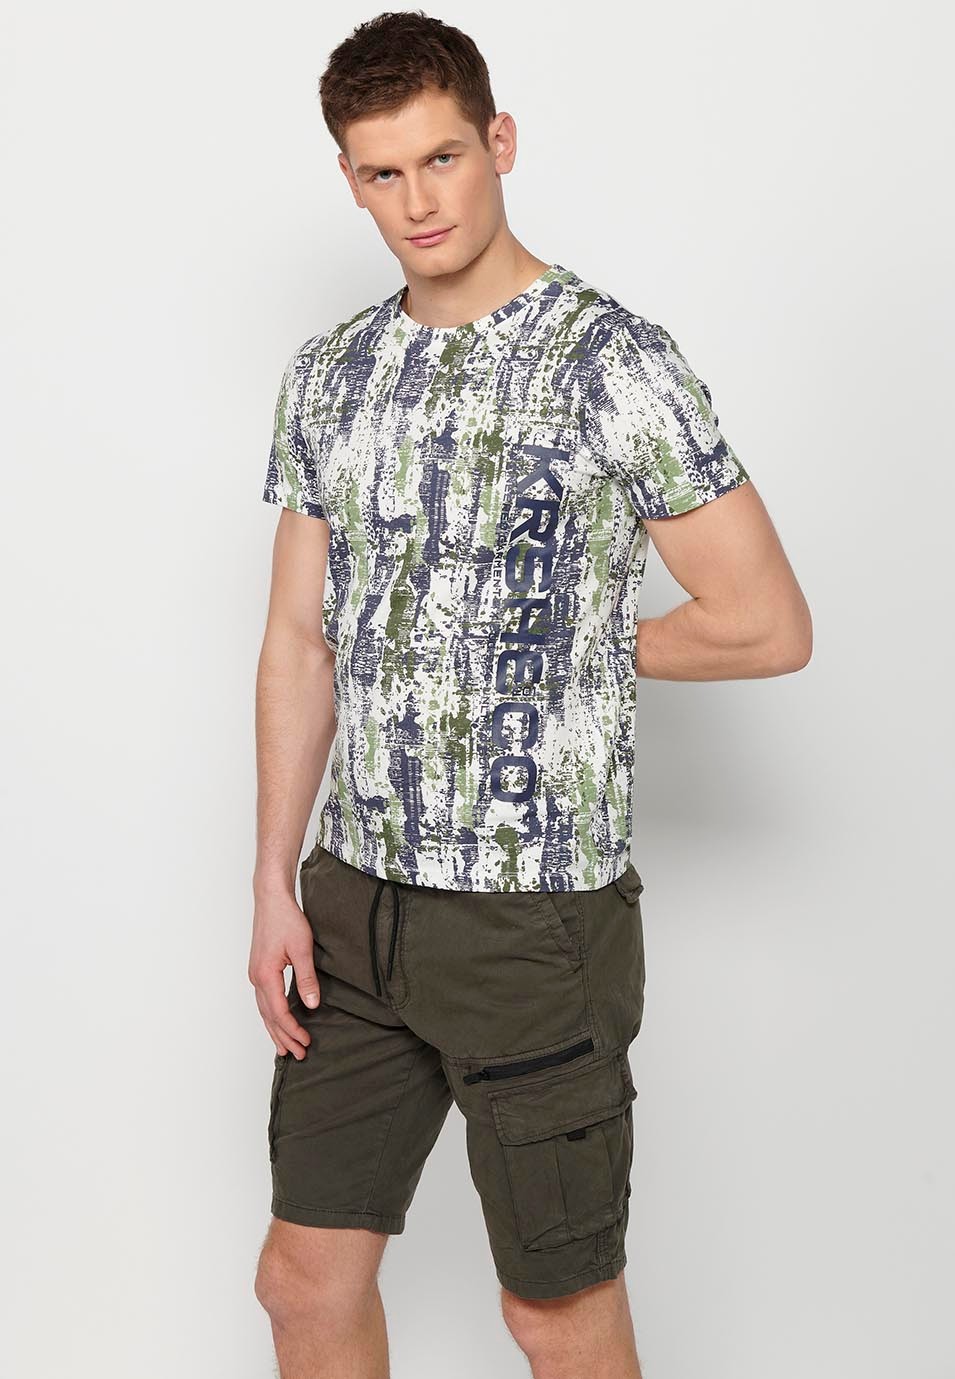 Camiseta de manga corta de algodo, estampada multicolor para hombre